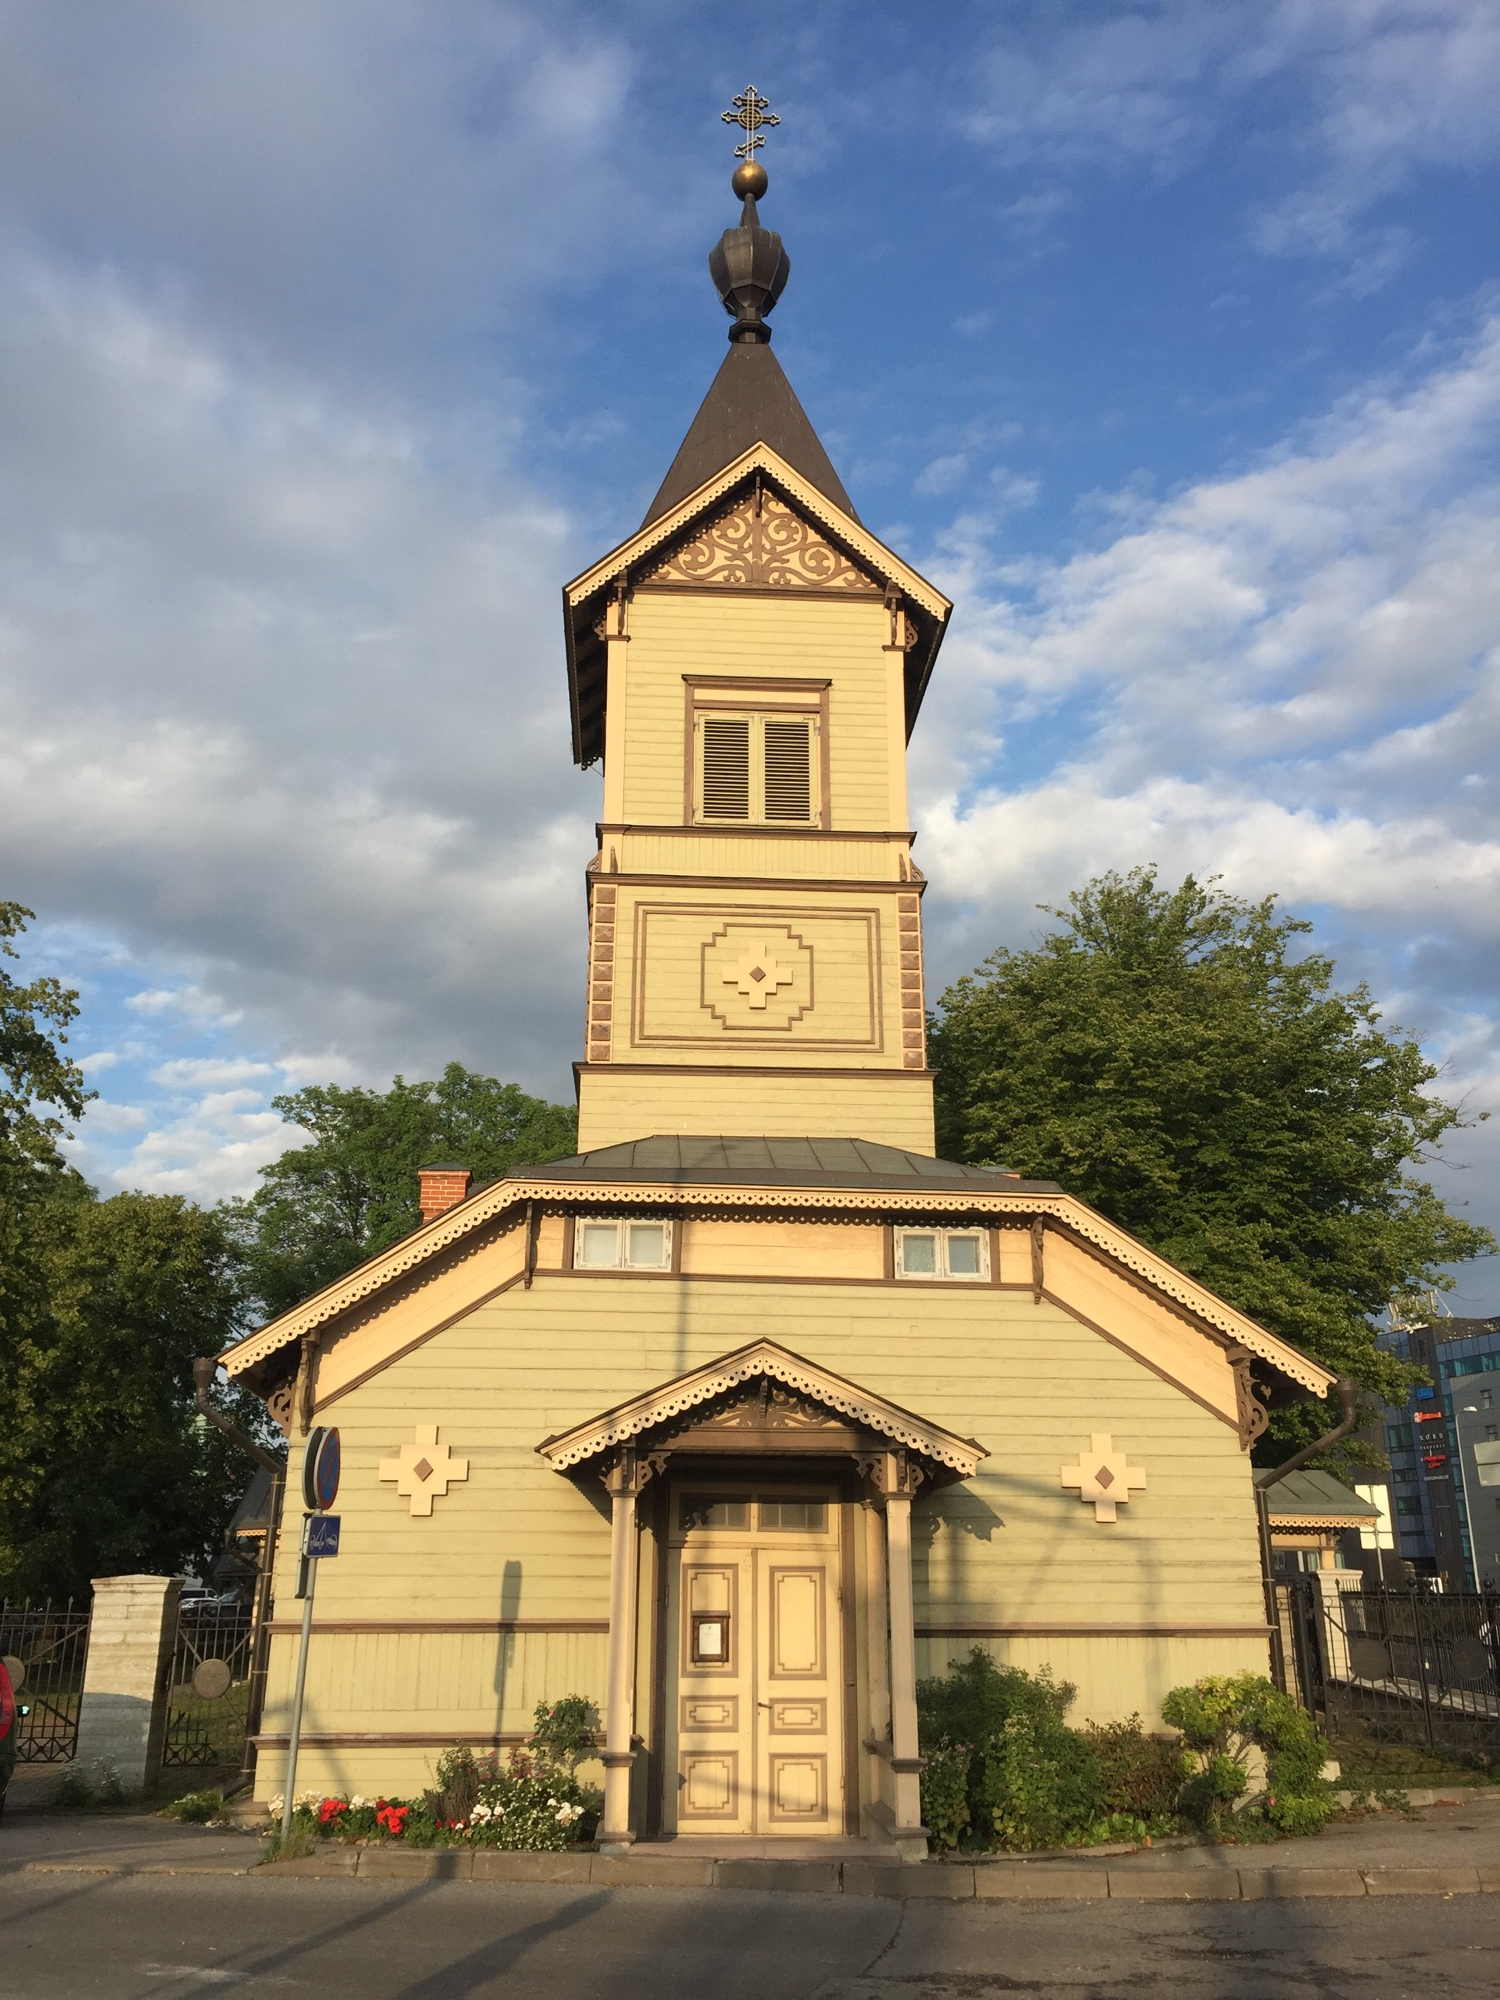 Püha Siimeoni ja Naisprohvet Hanna kirik, Kirche im Hafengebiet von Tallinn, romantische Holzarchitektur